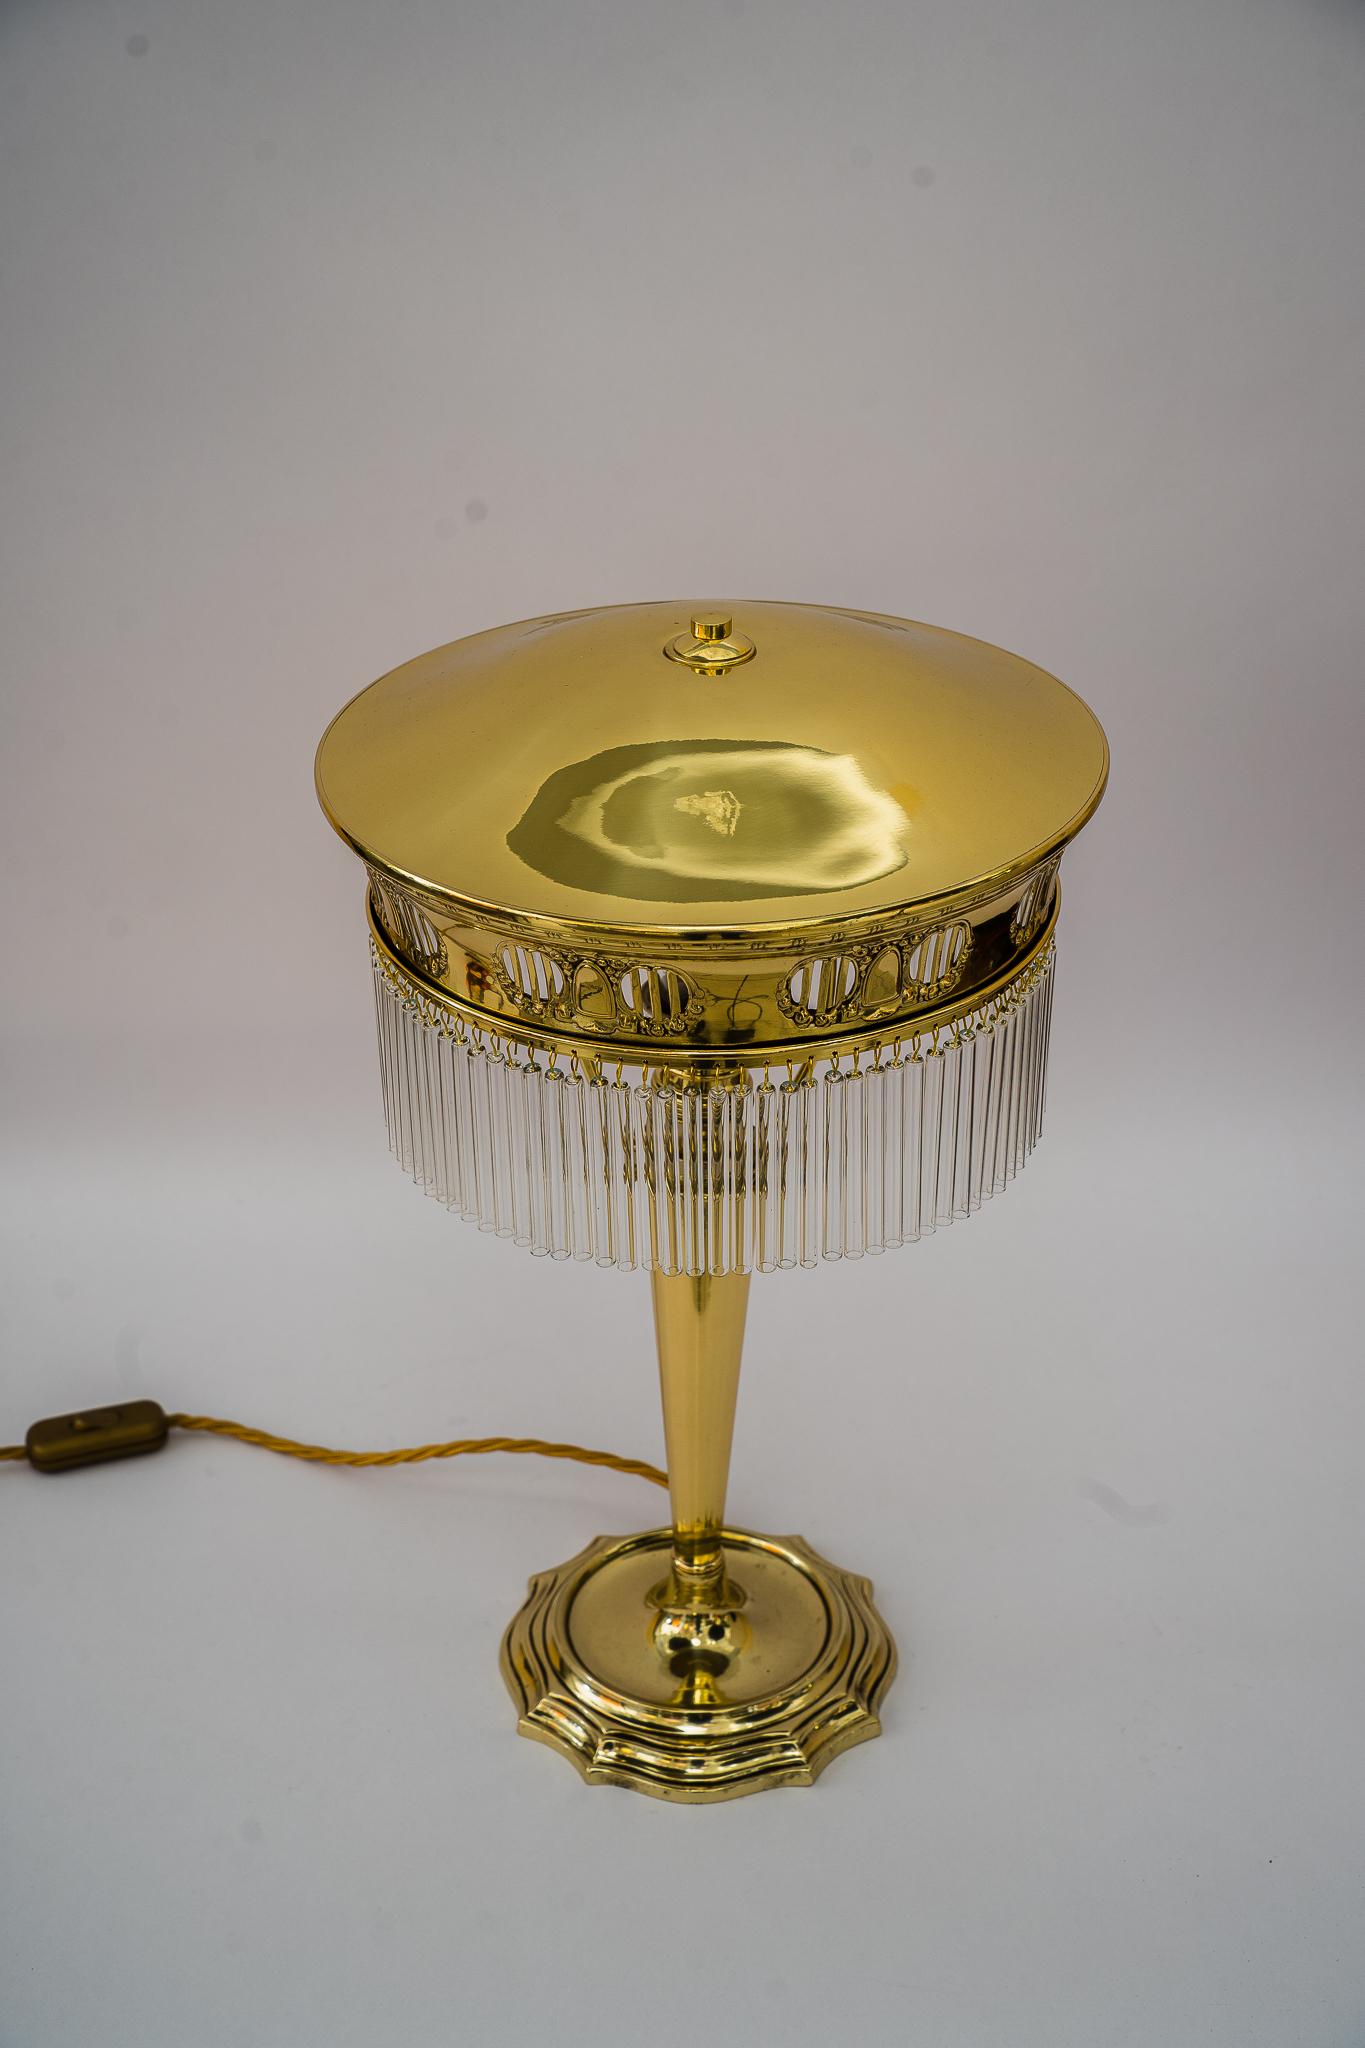 Lampe de table Art Déco viennois 1920s
Polis et émaillés au four
Les bâtons de verre sont remplacés (neufs).